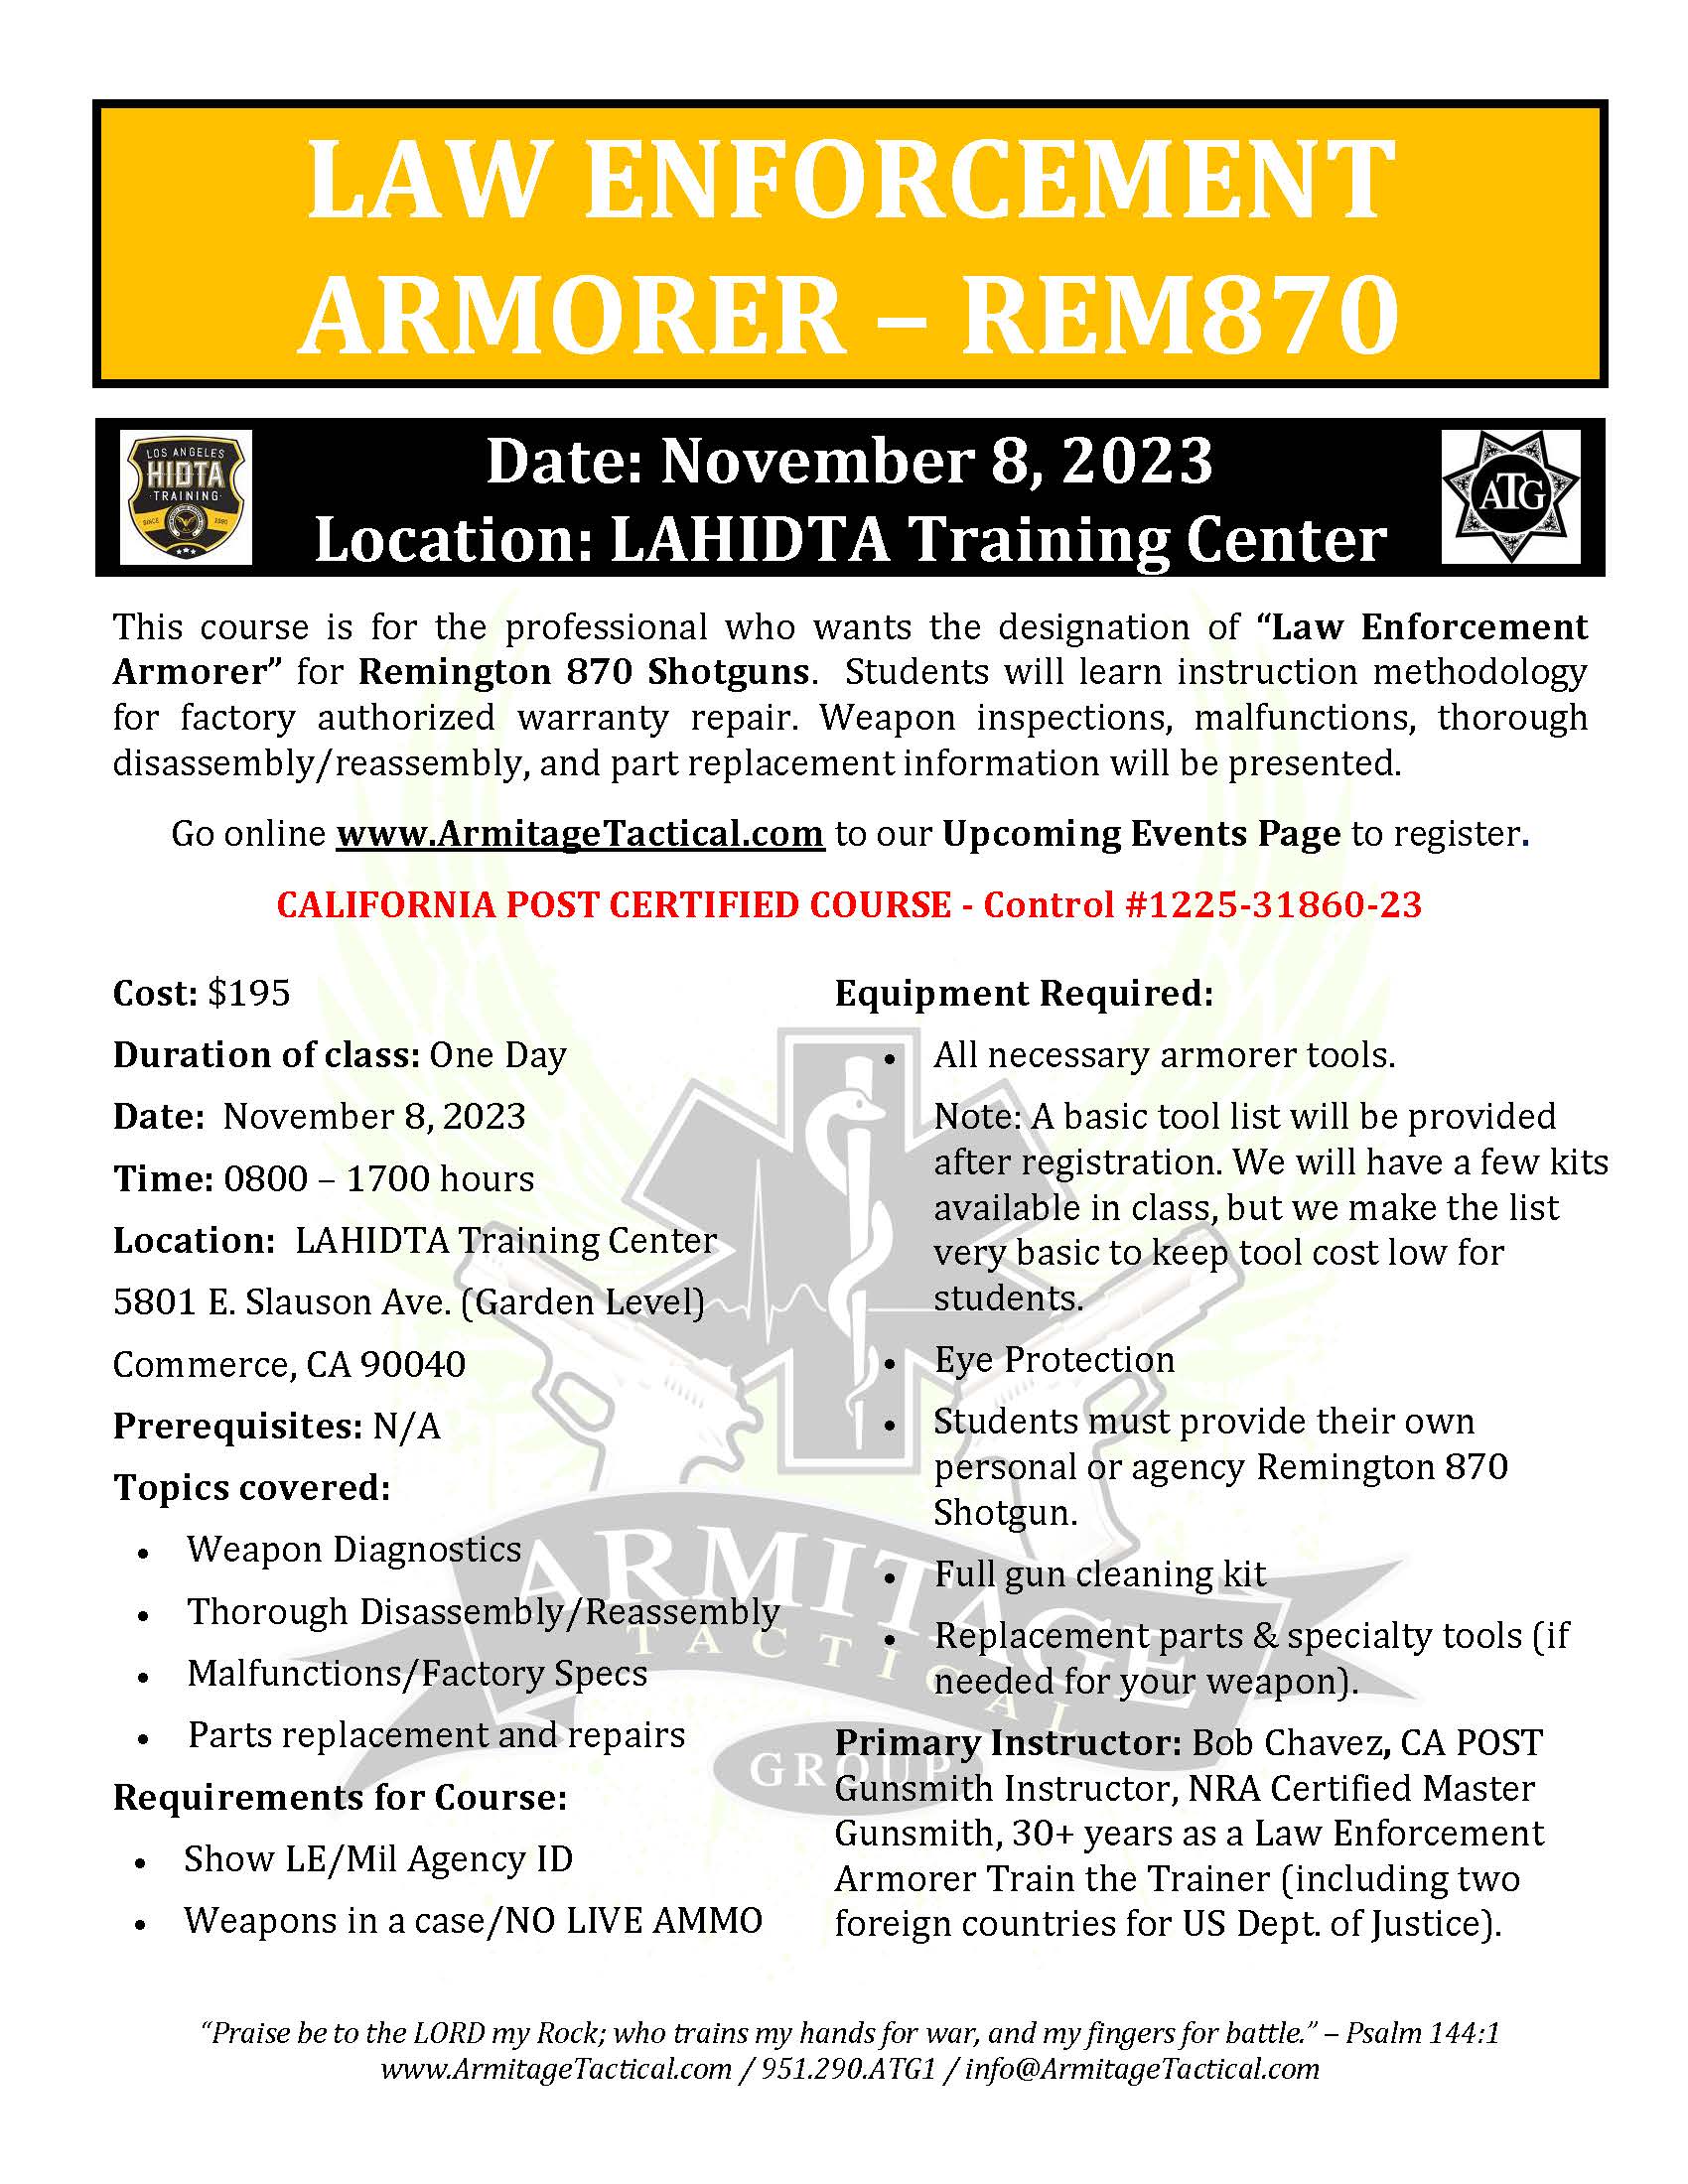 2023/11/08 - Remington 870 LE Armorer's Course - Commerce, CA